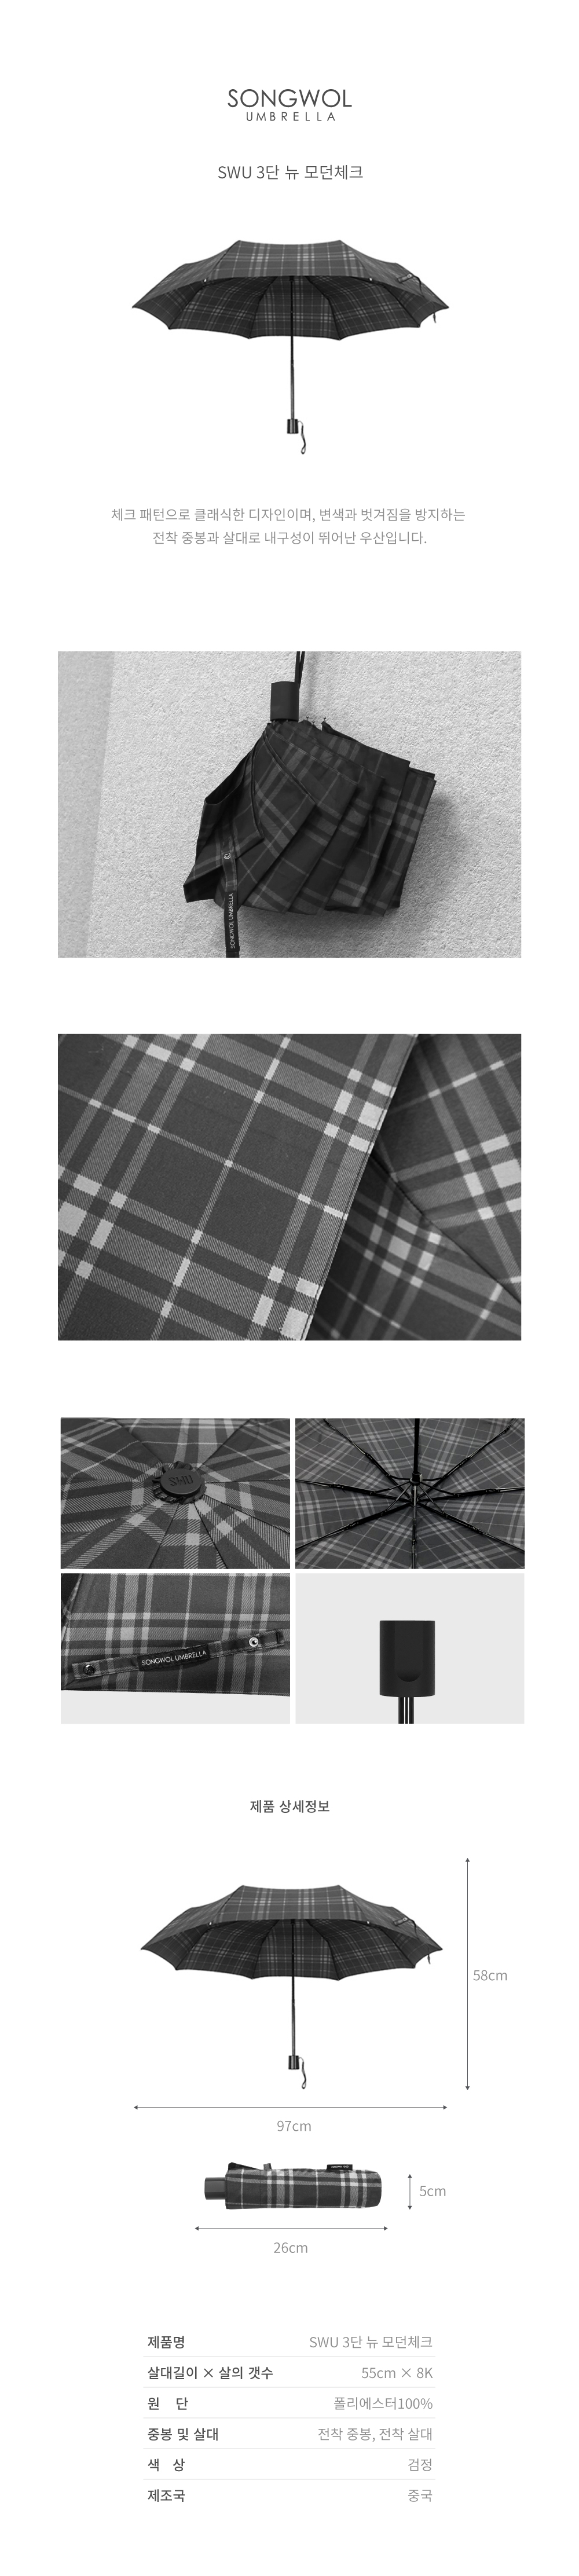 체크 패턴으로 클래식한 디자인이며, 변색과 벗겨짐을 방지하는  전착 중봉과 살대로 내구성이 뛰어난 우산입니다.